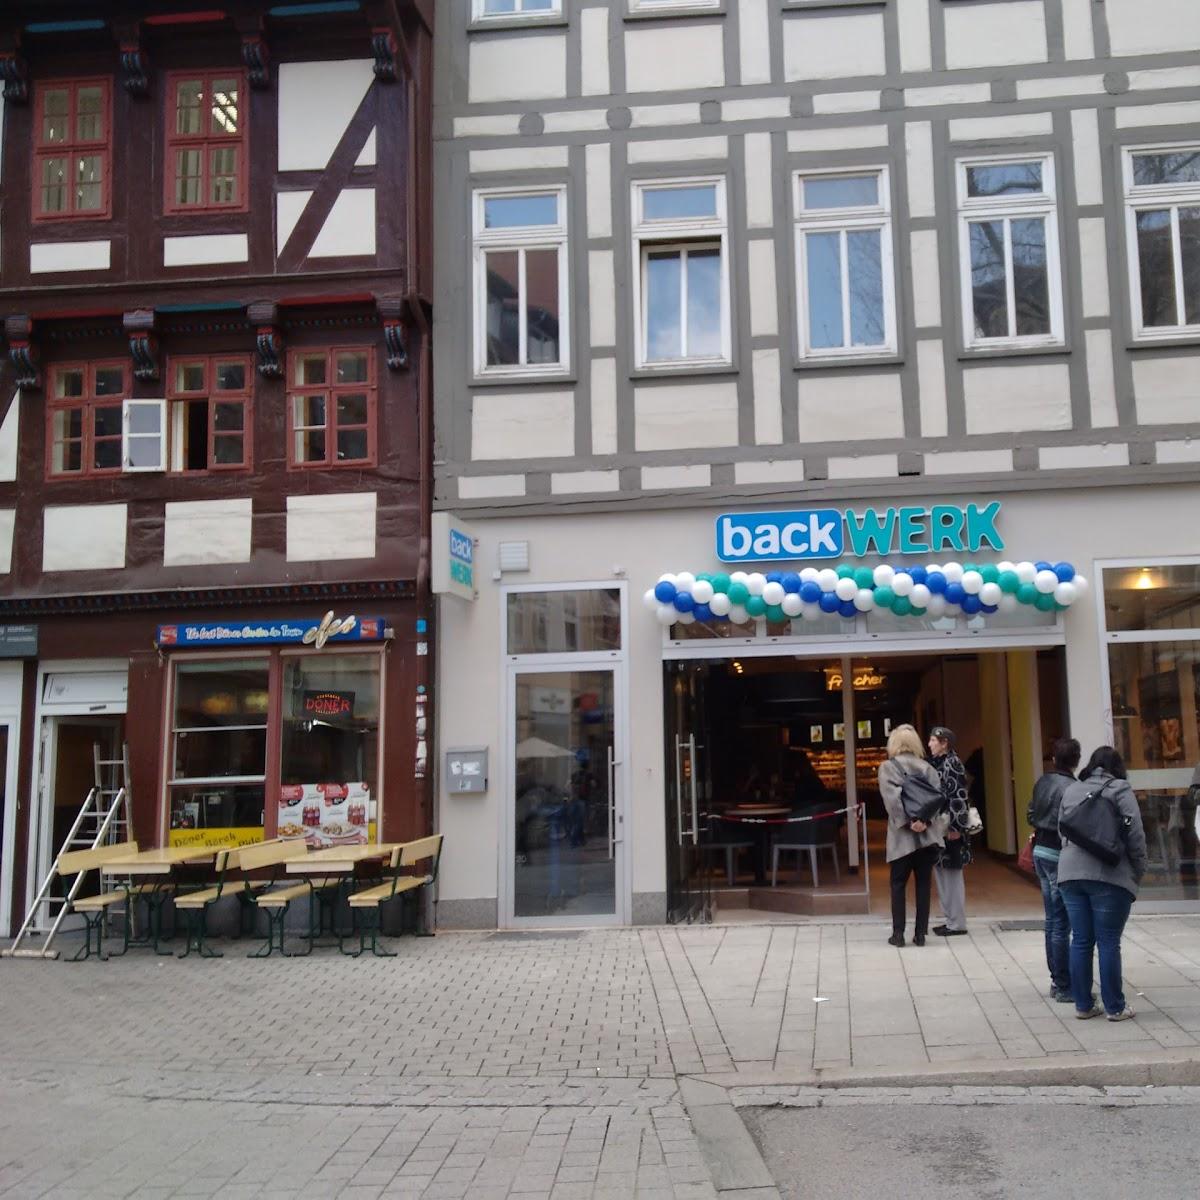 Restaurant "BackWerk" in Göttingen